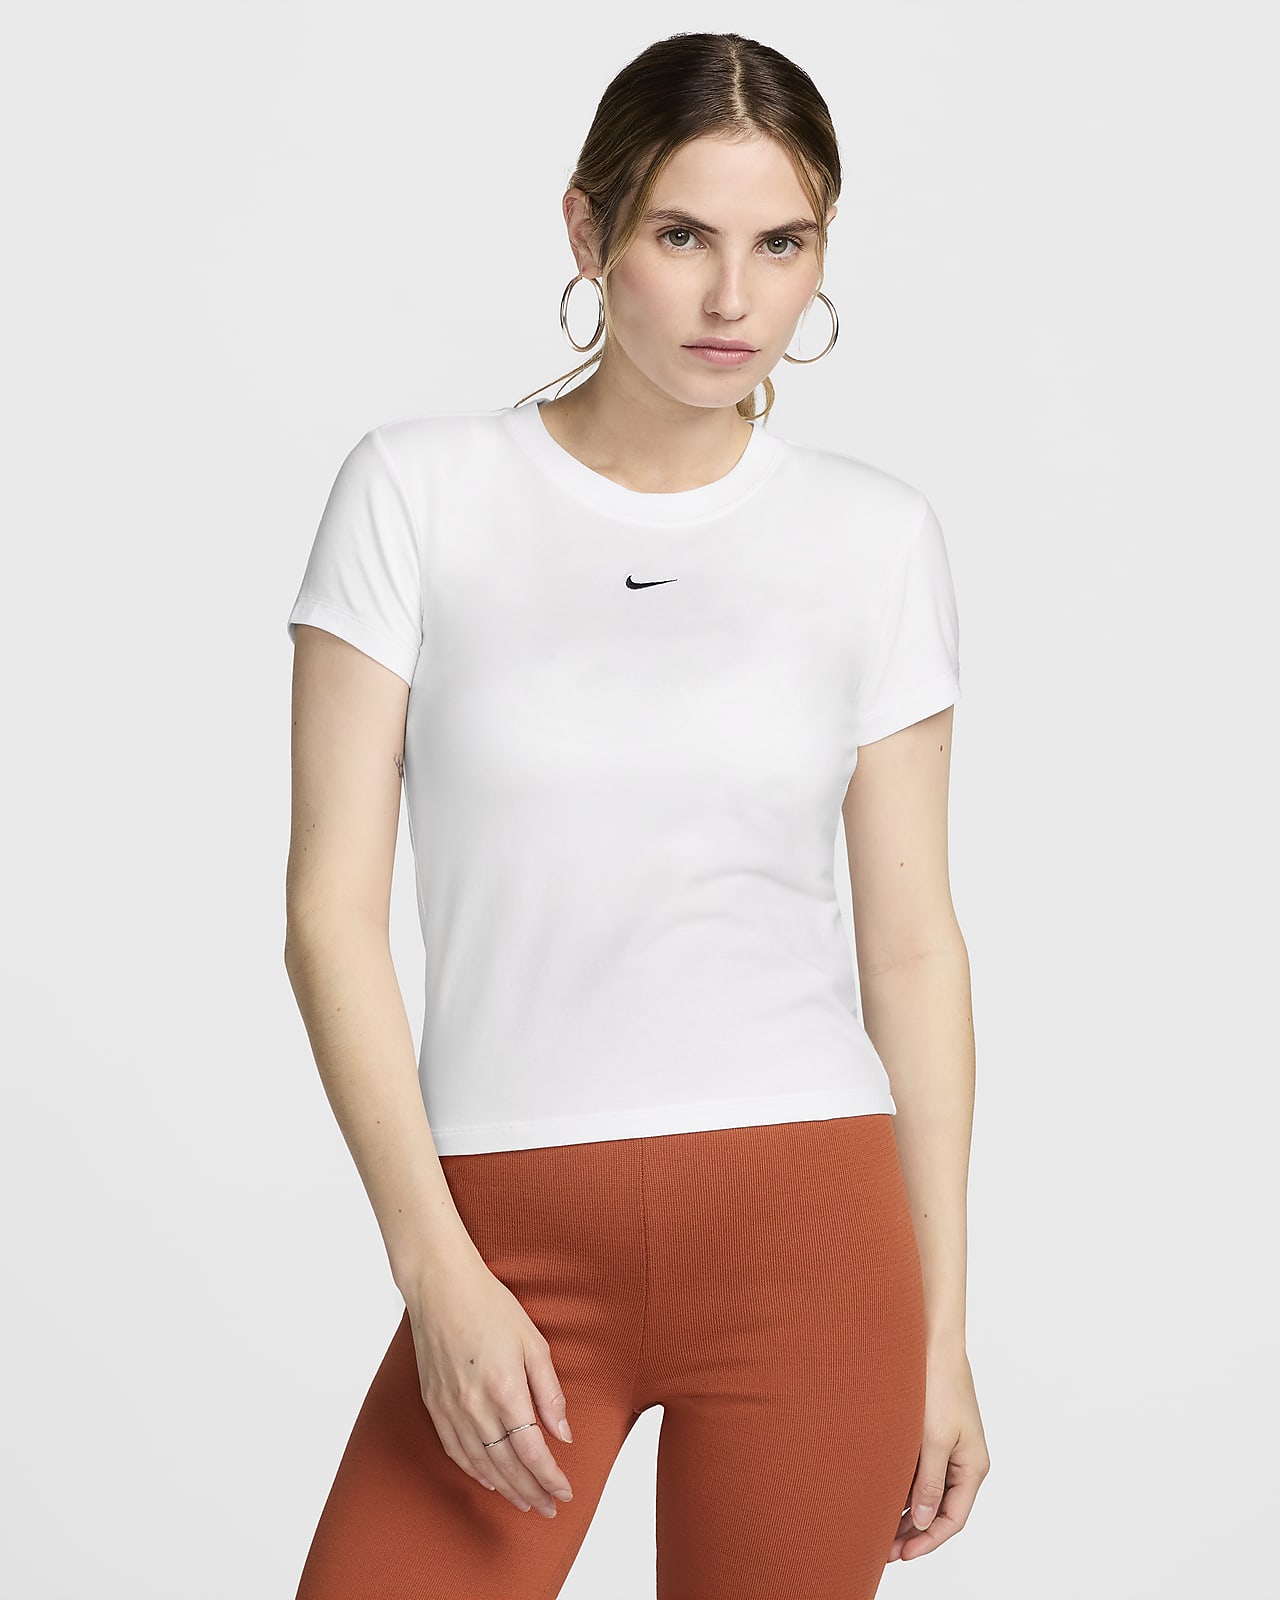 Maskinstrikket Nike Sportswear Chill-T-shirt til kvinder